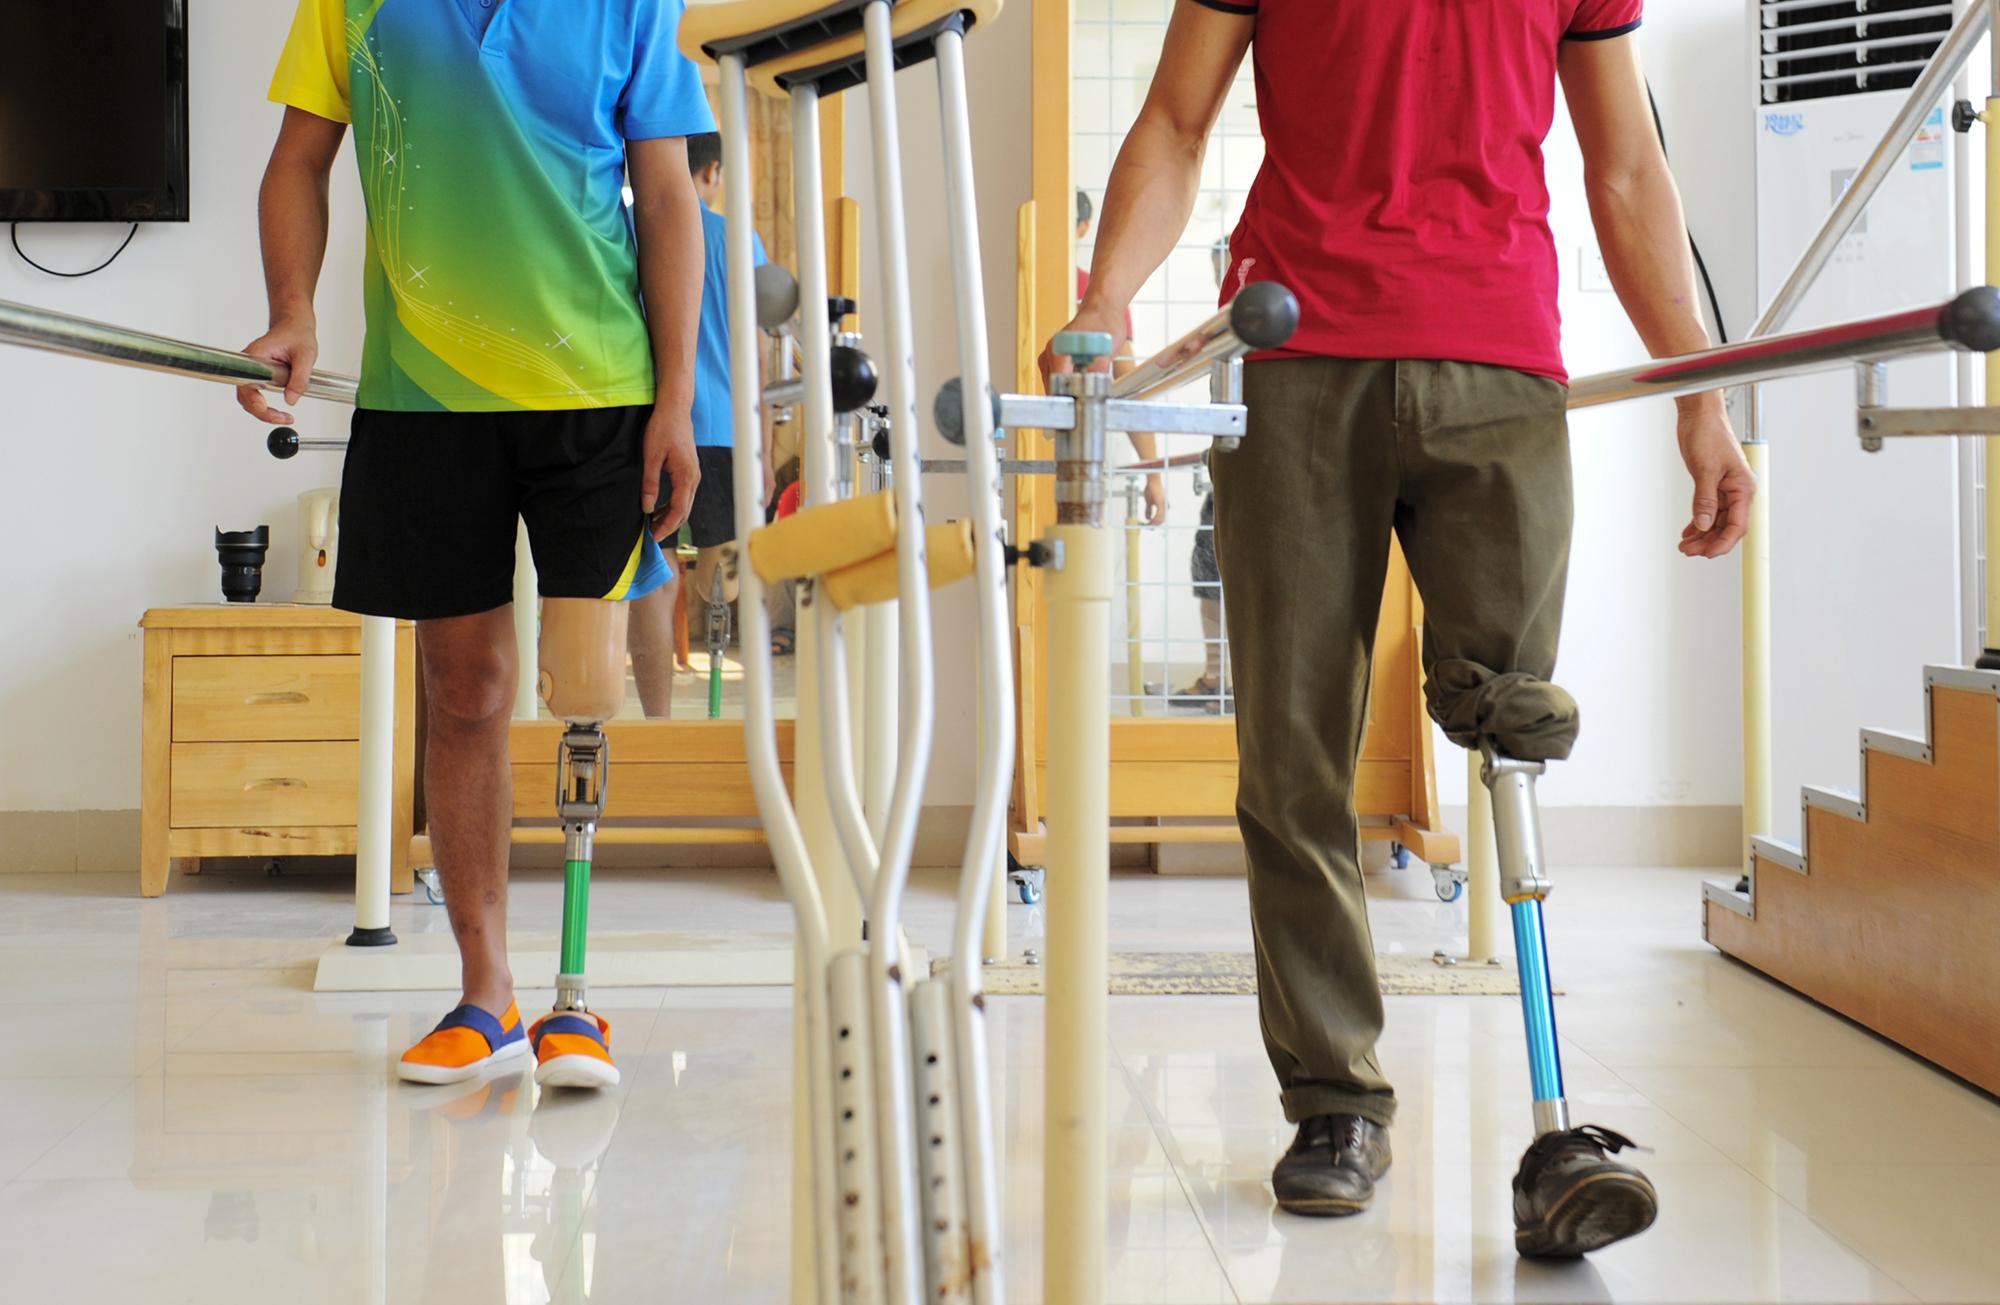 残疾人适配辅具6377件,制作并装配假肢170例,更换脚板30例,维修下肢